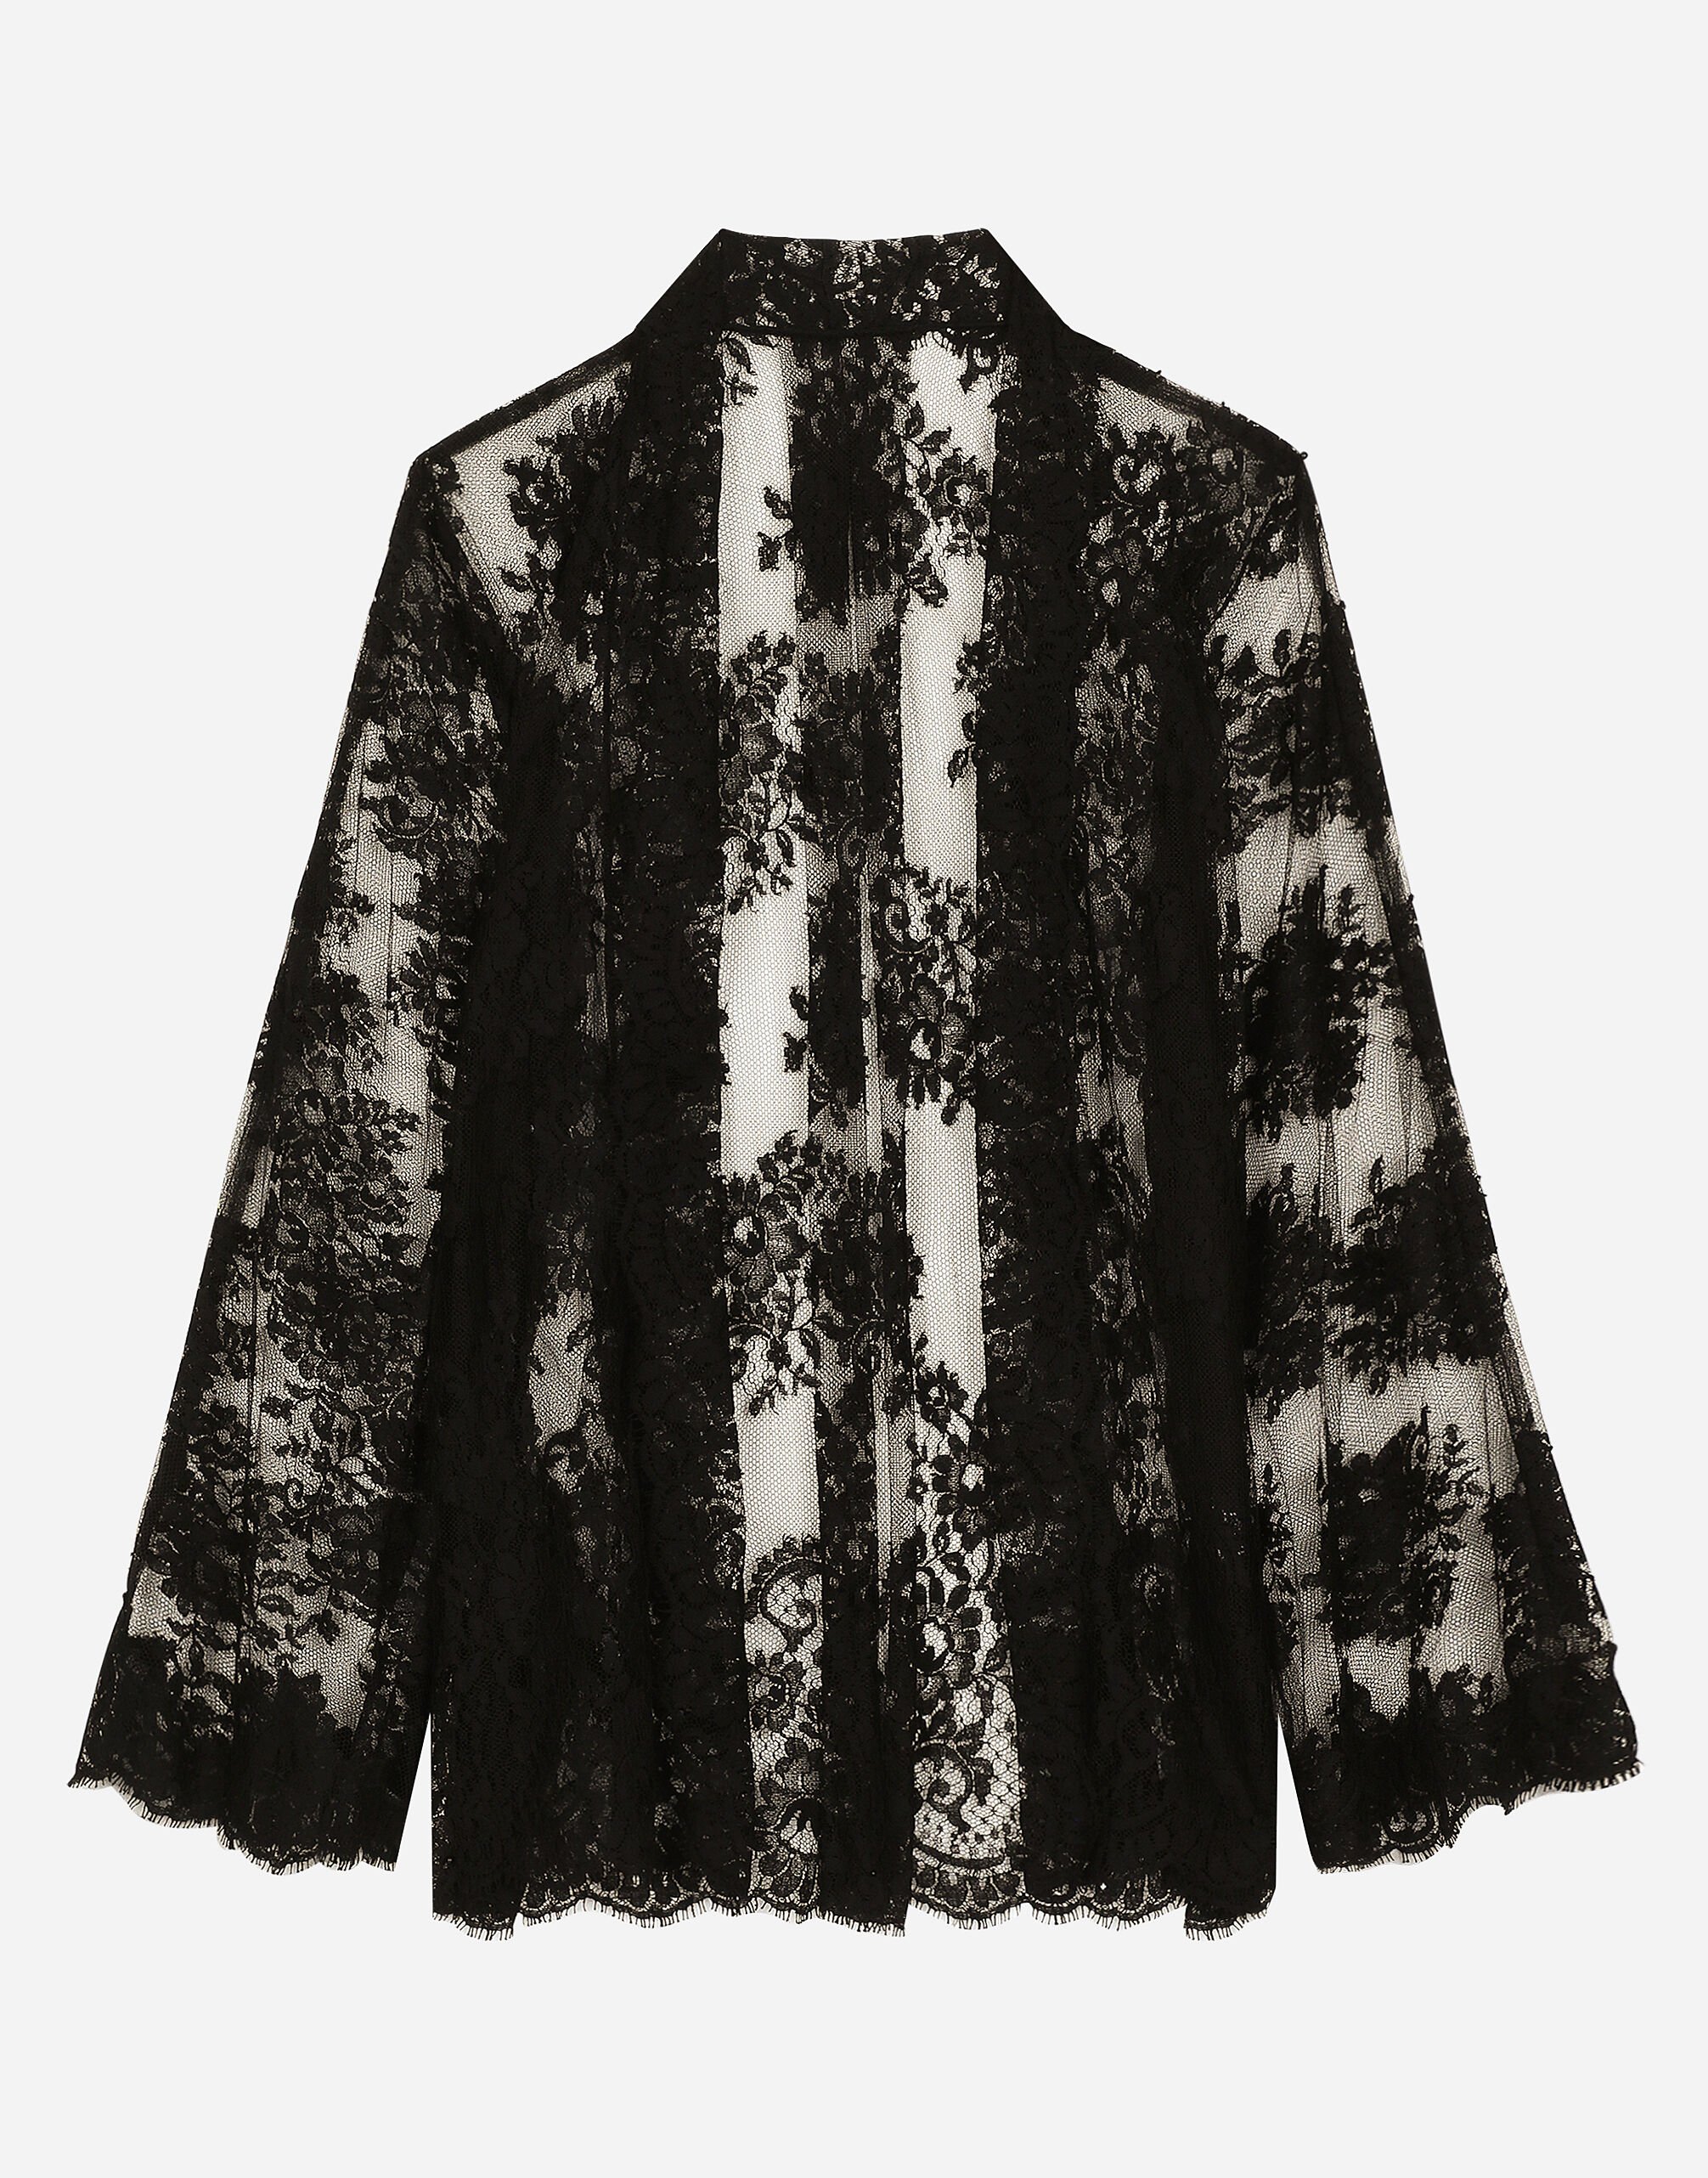 Dolce & Gabbana Camisa estilo quimono de encaje Chantilly floral Negro BB7287A1471